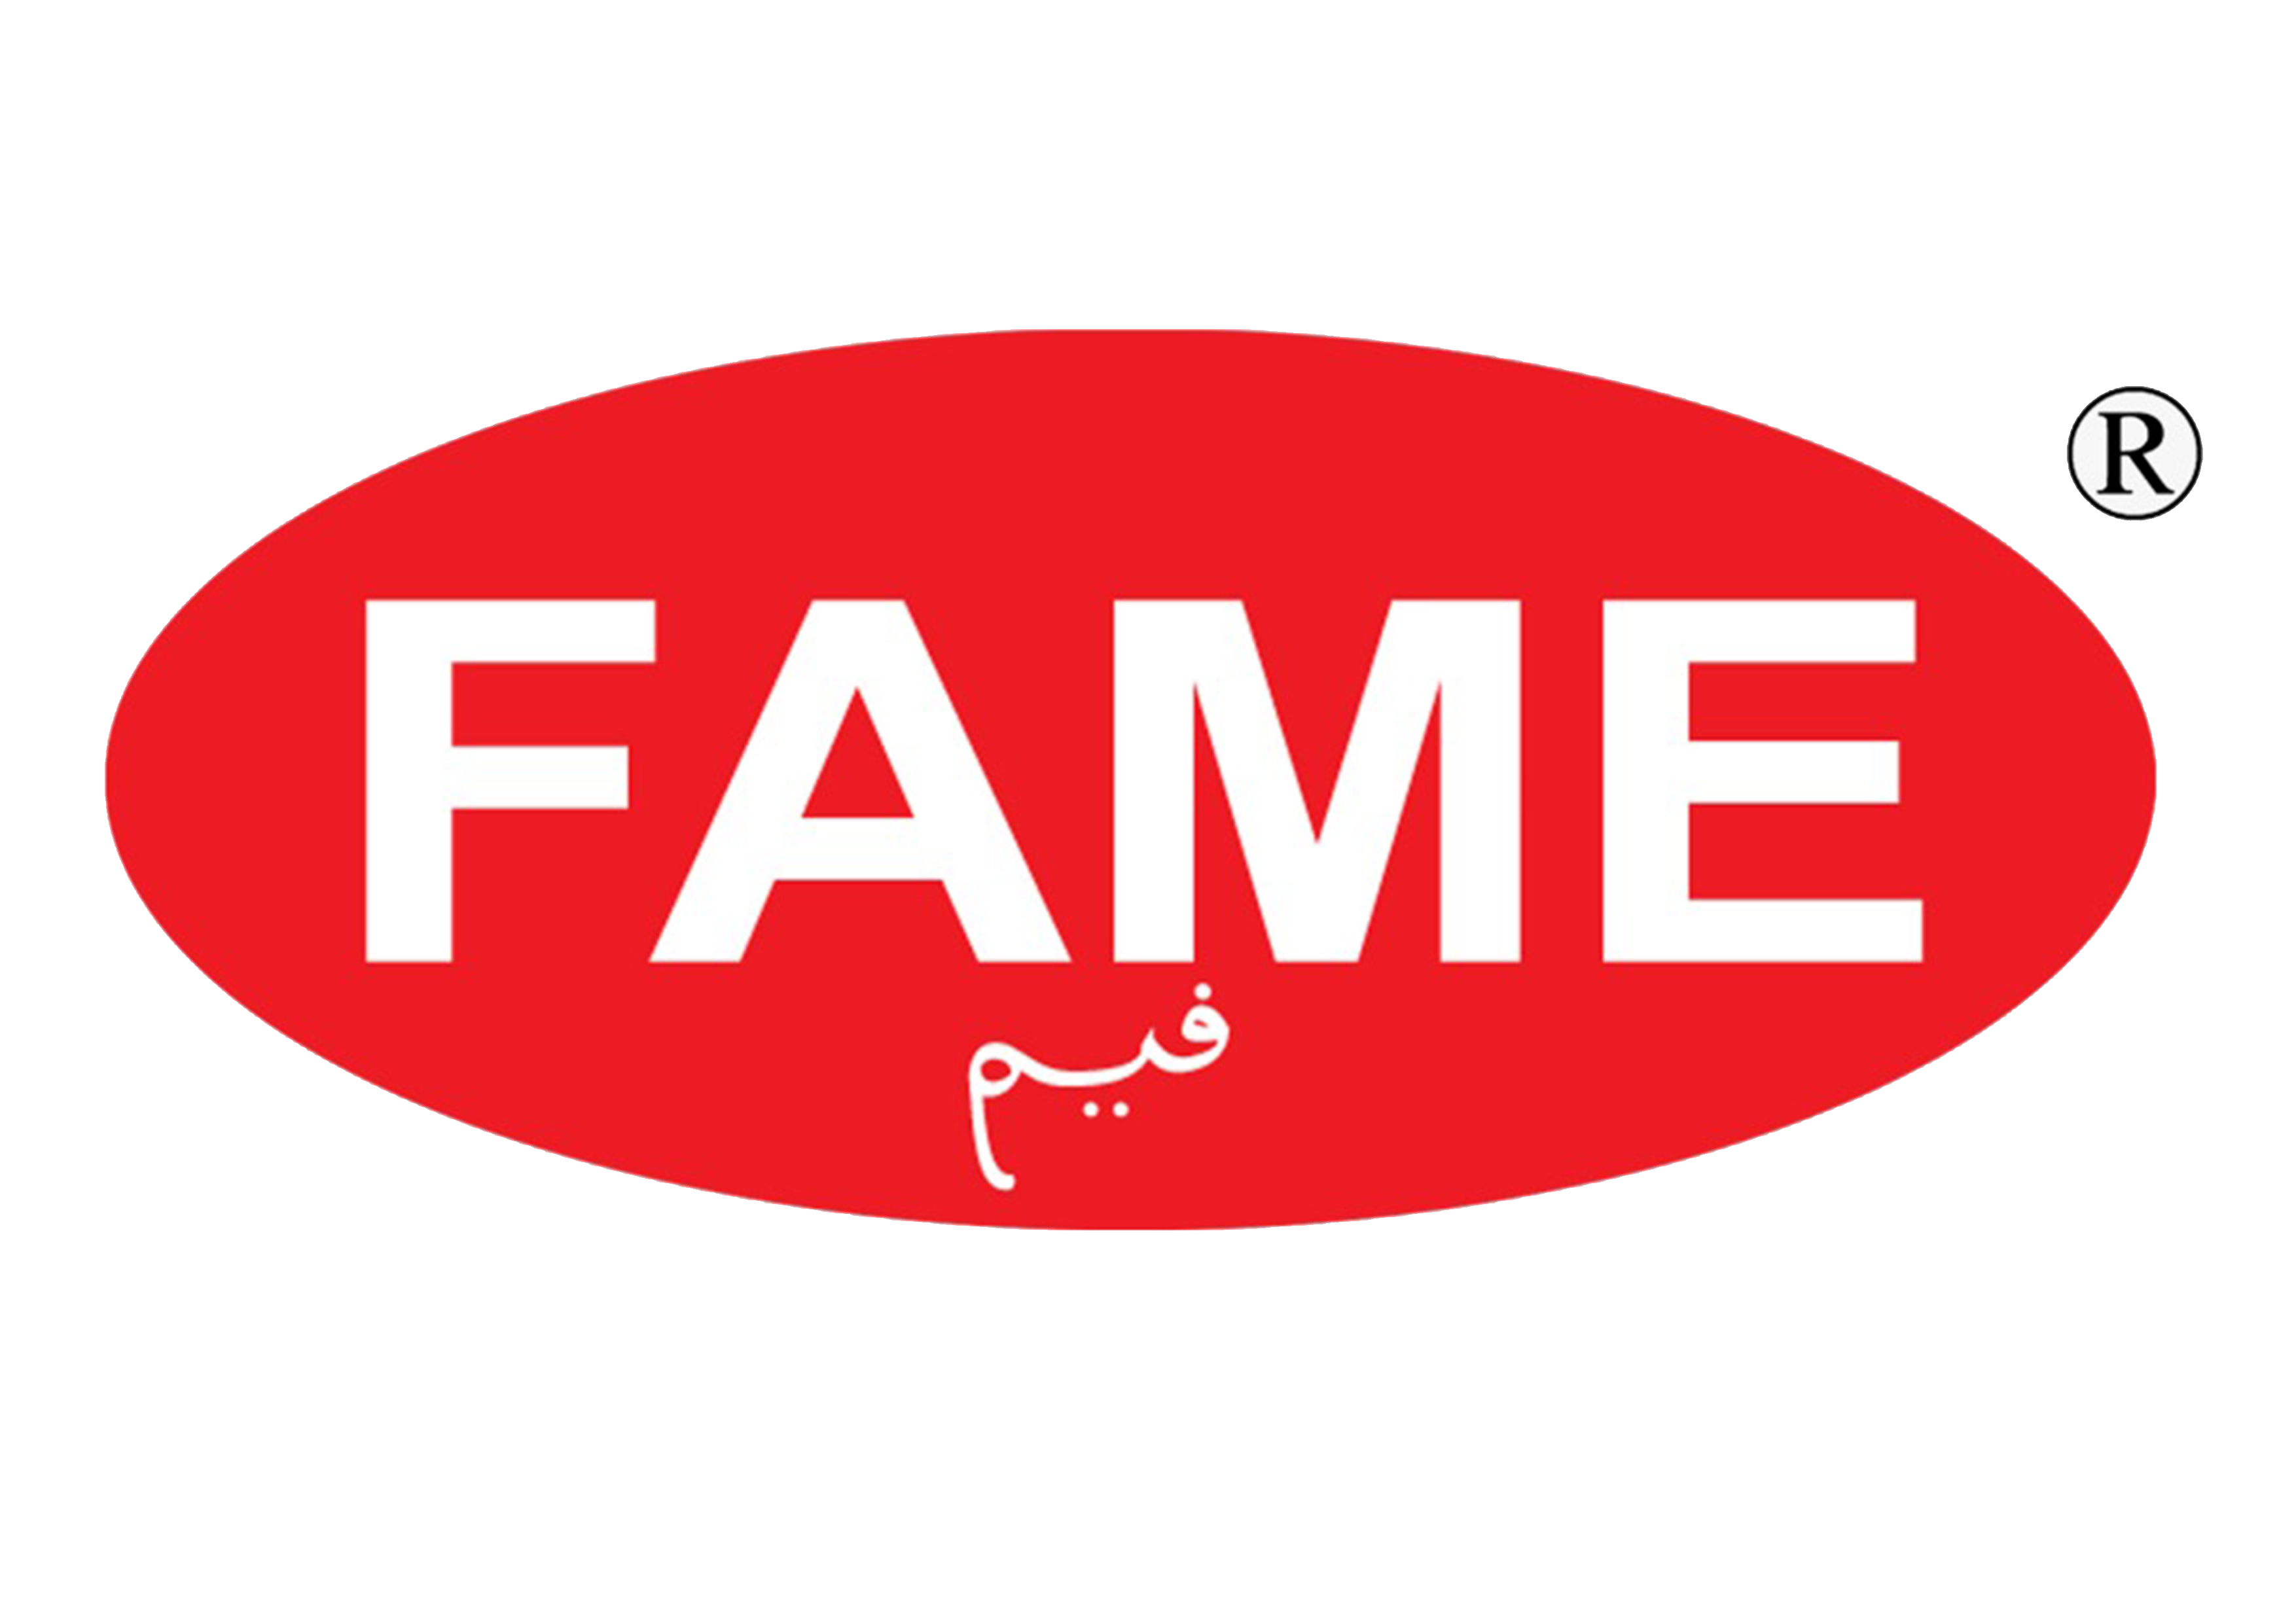 Fame Furniture | Herbal Mattress